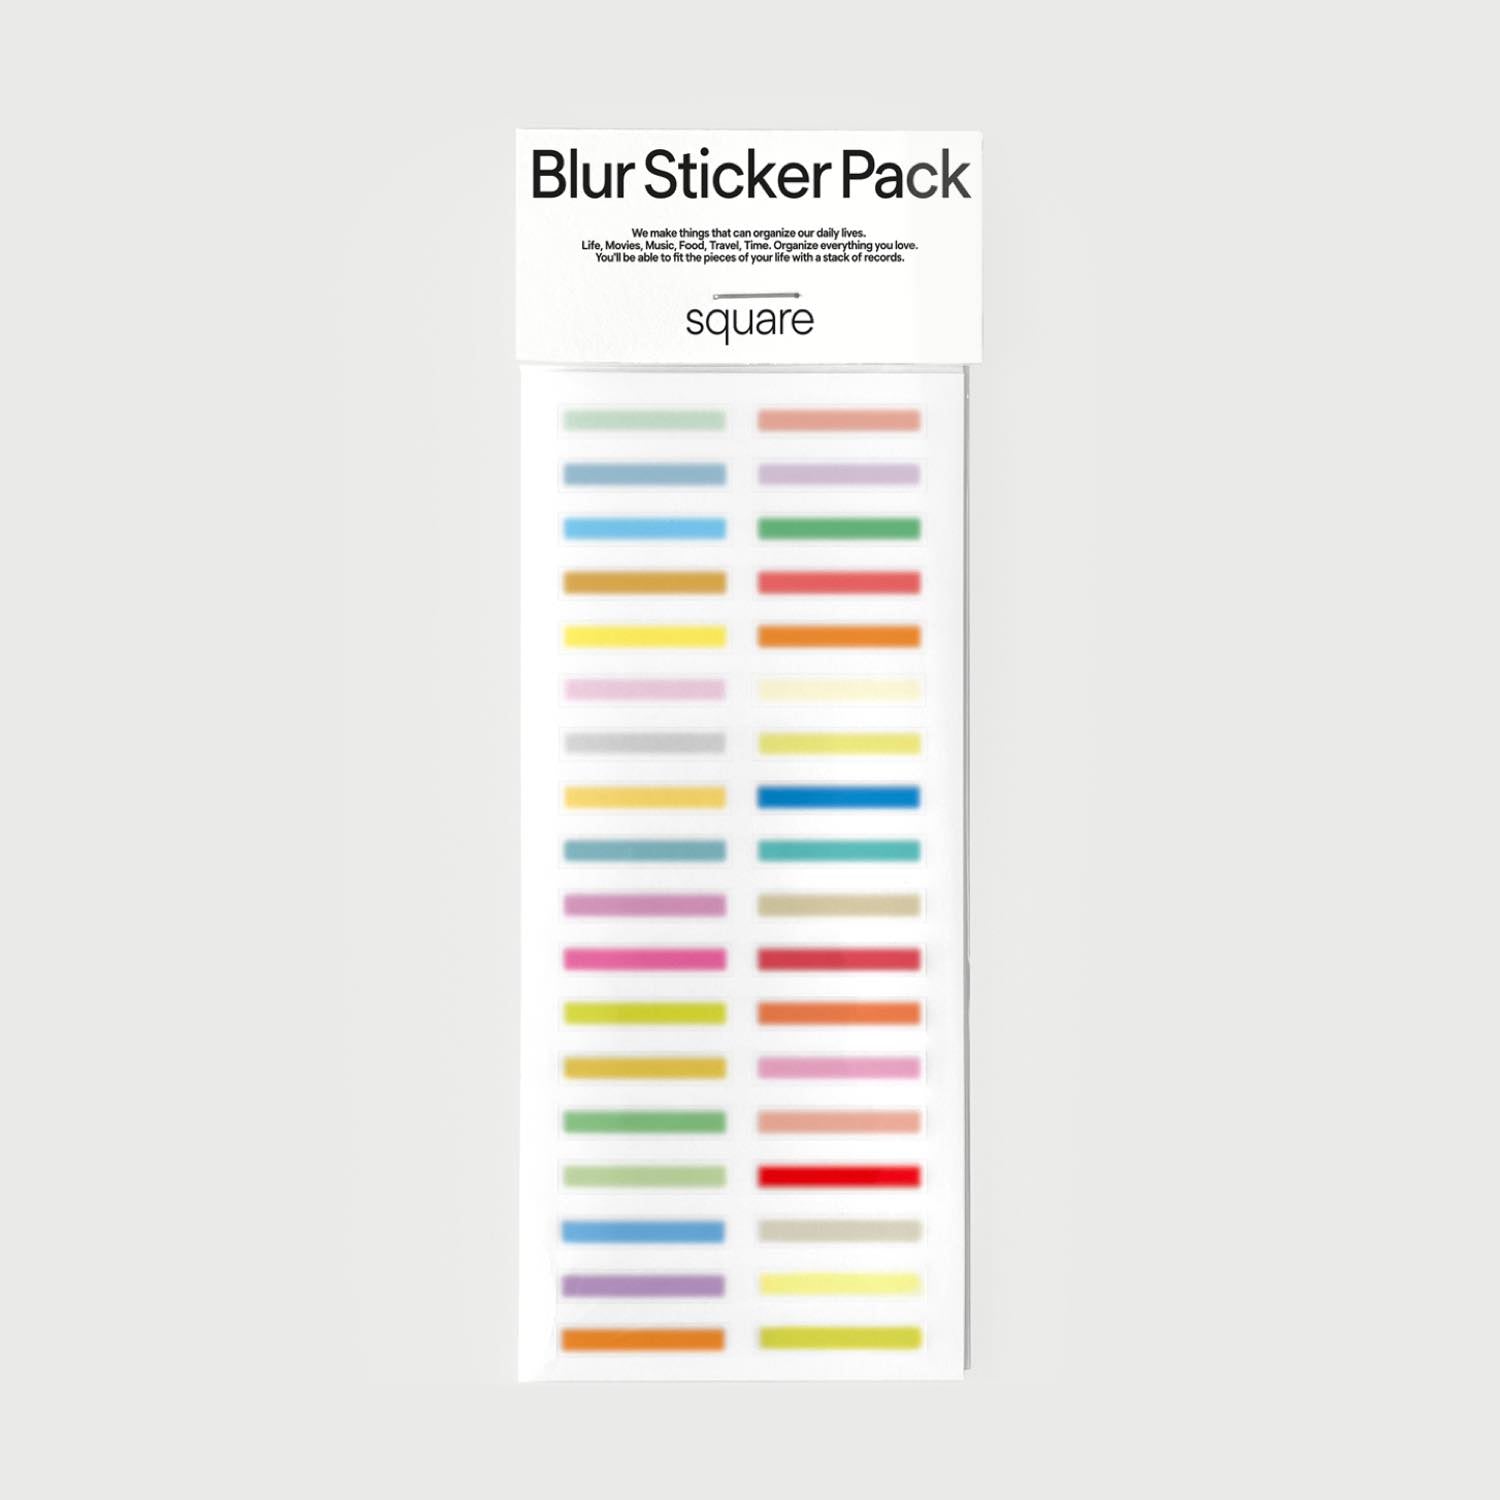 oab blur sticker pack square